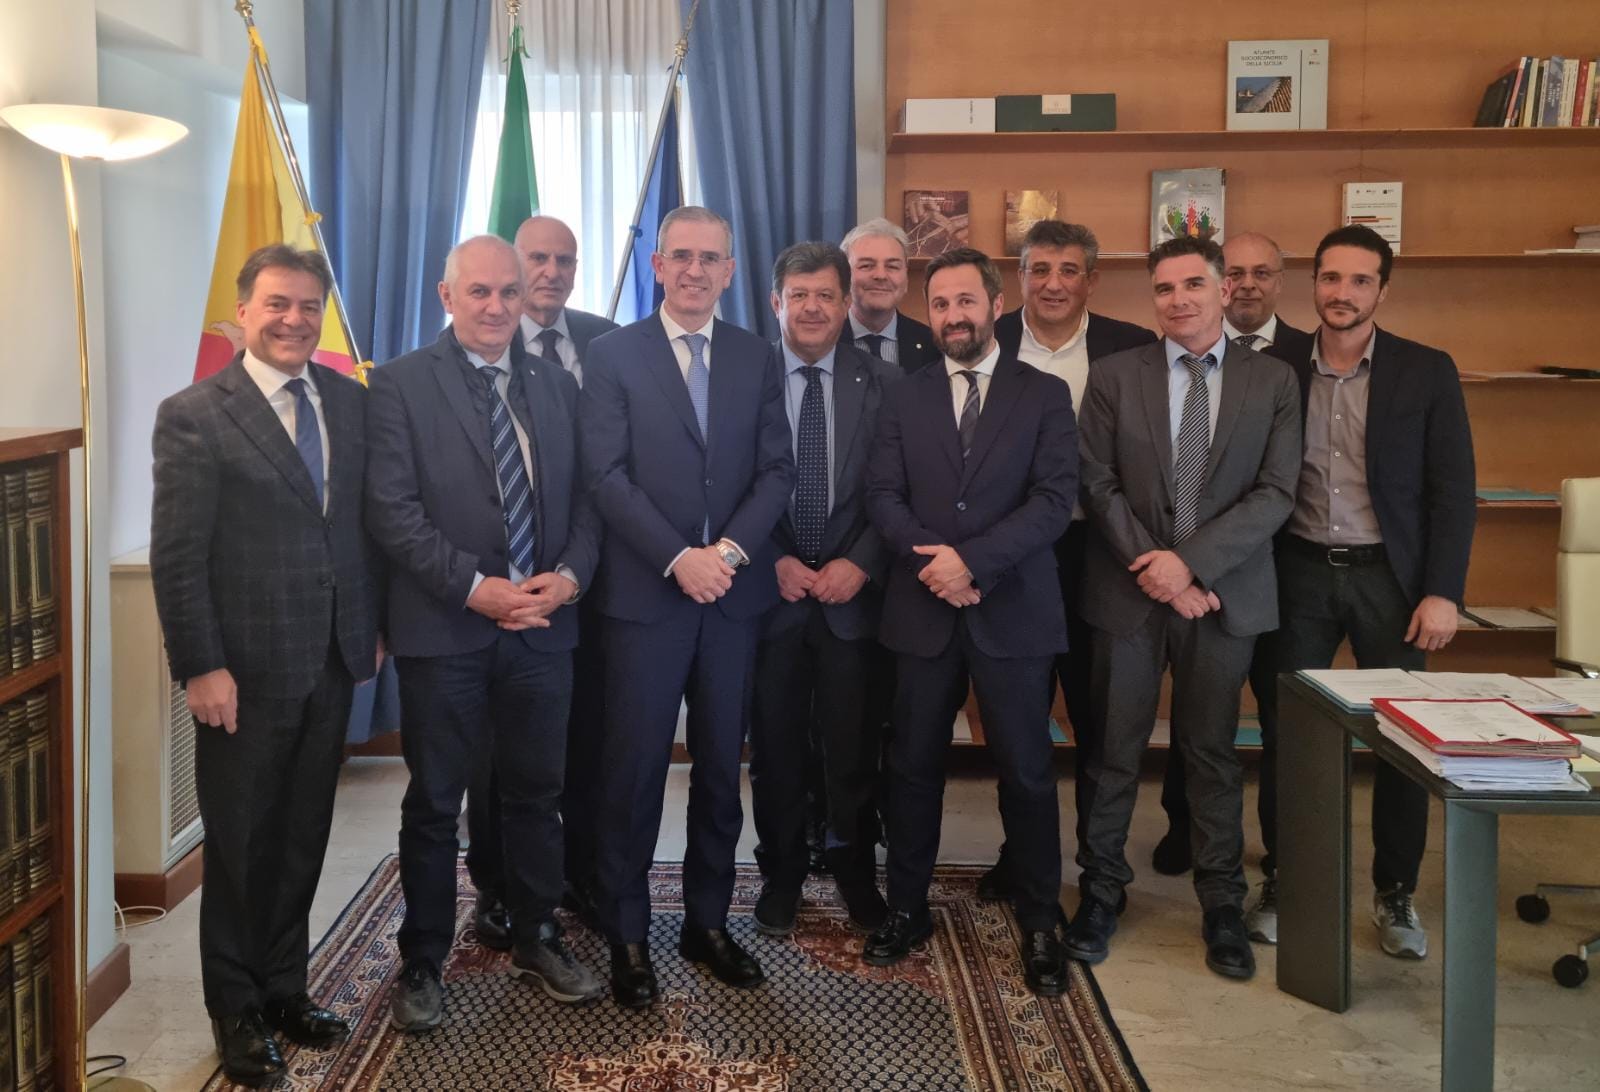 Assoconfidi Sicilia, giudizio favorevole sulle iniziative del Governo regionale a sostegno delle PMI